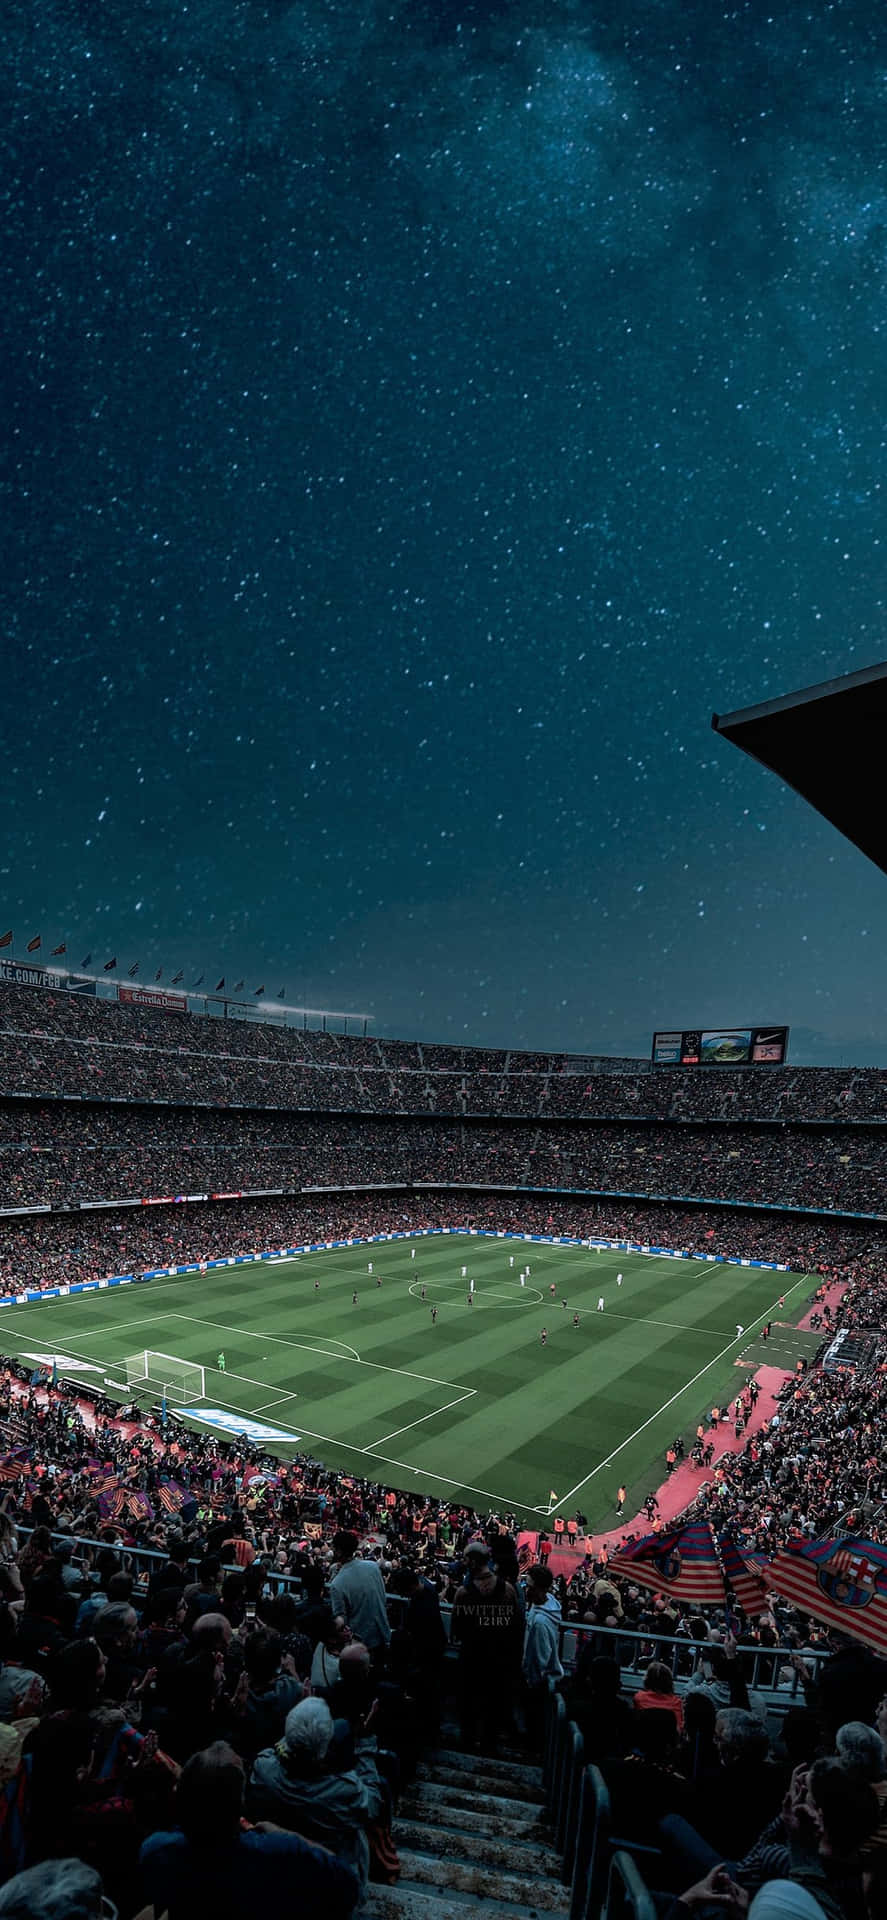 Starry Night Football Match Camp Nou Wallpaper